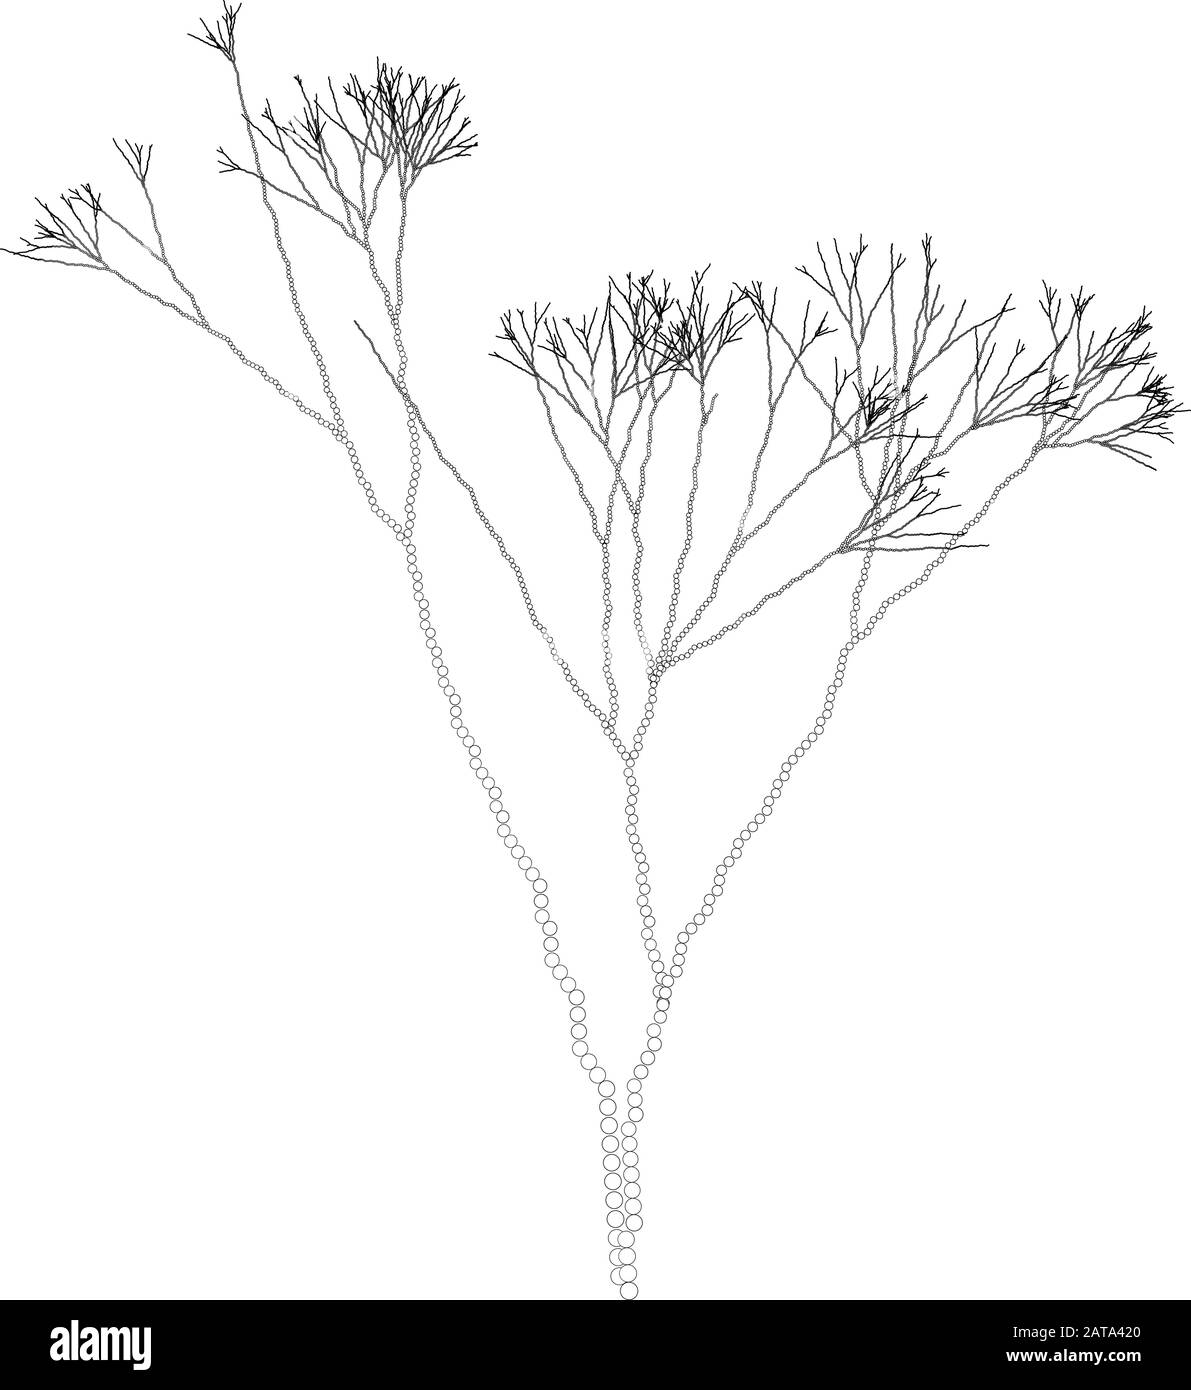 Vecteur Fractal pointillés algues branches - élément graaphique Illustration de Vecteur